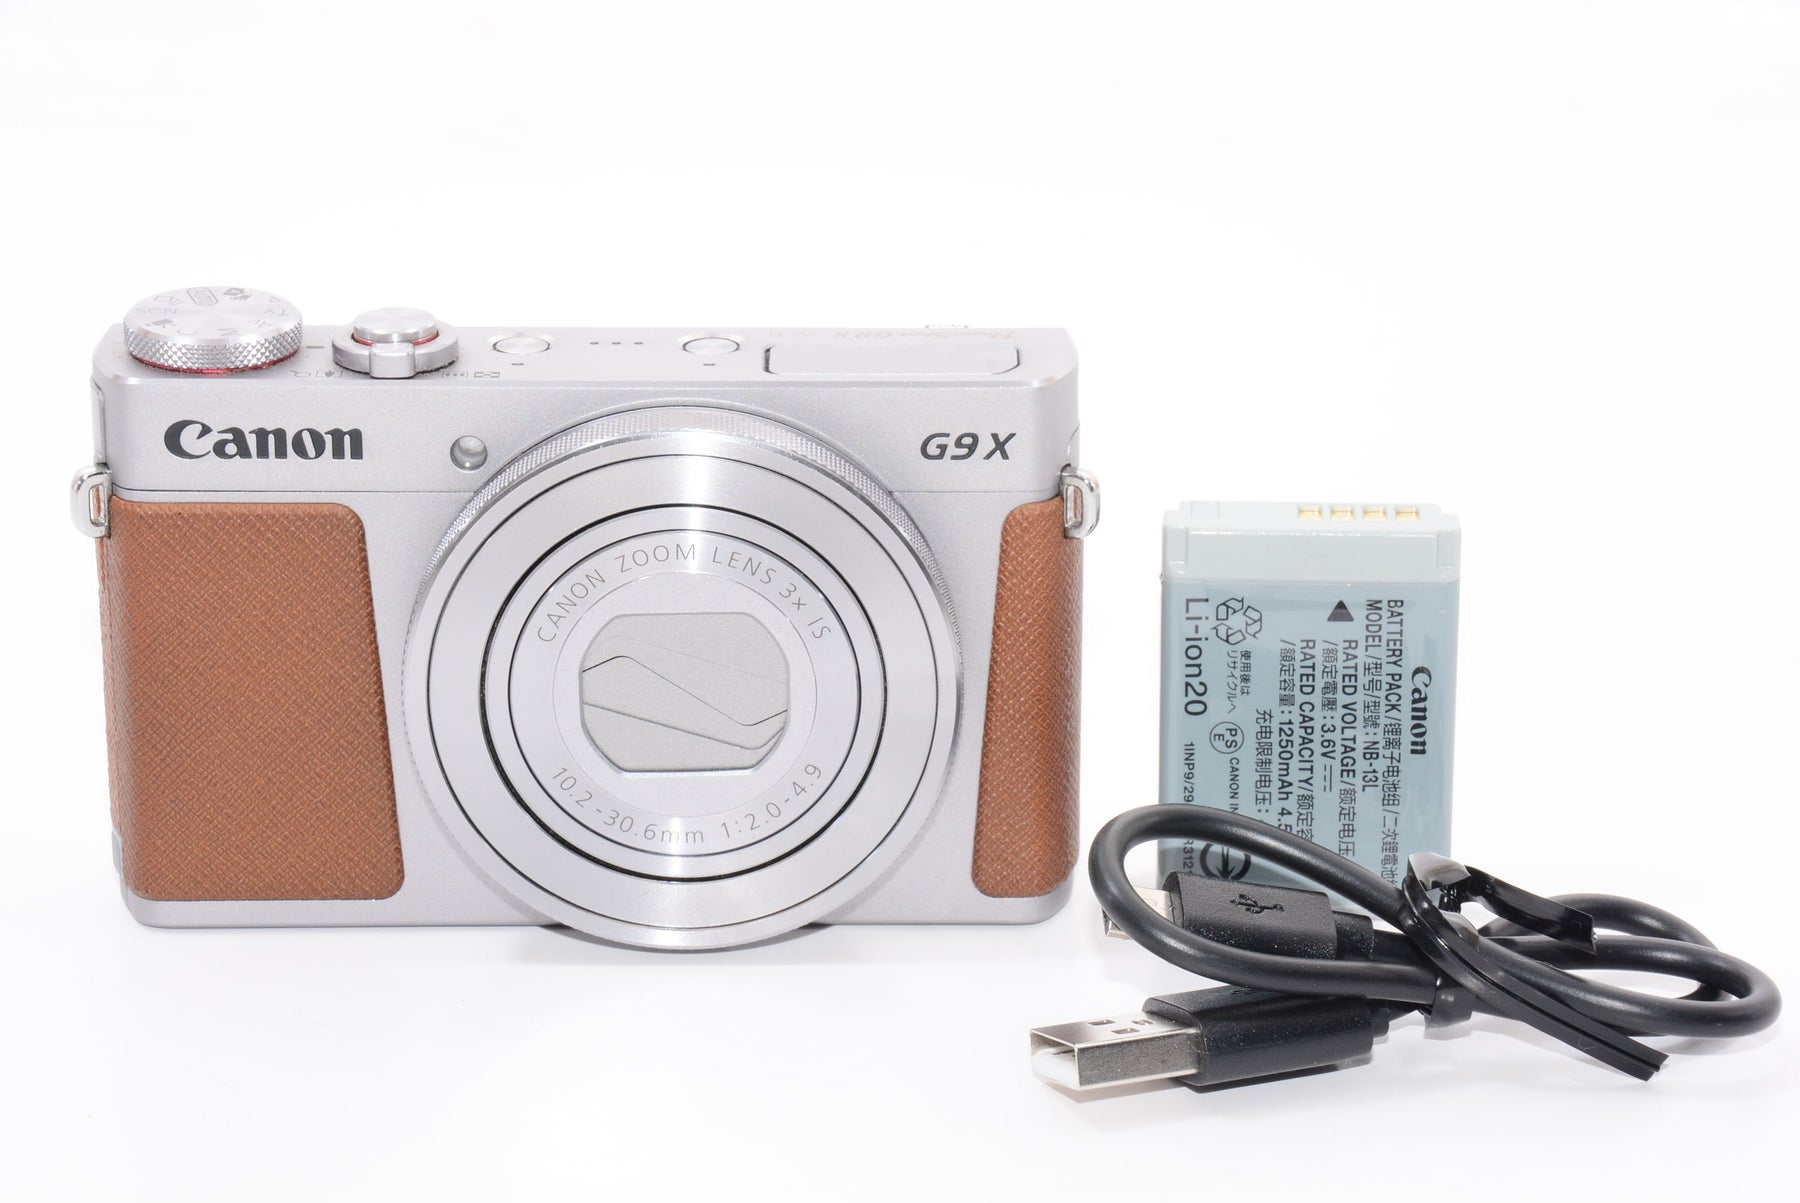 【外観並級】Canon デジタルカメラ PowerShot G9 X(シルバー) 光学3.0倍ズーム 1.0型センサー PSG9X(SL)